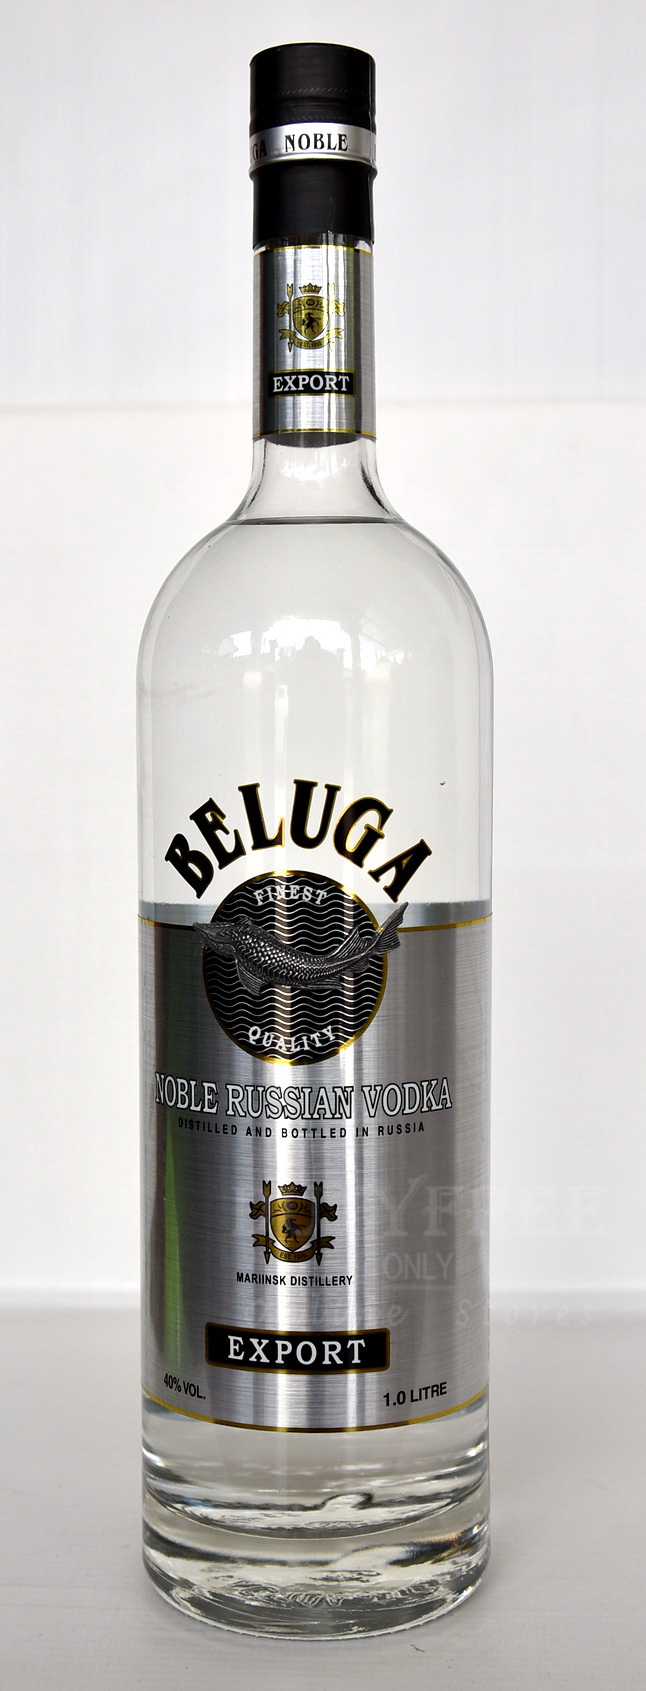 Beluga Noble Russian Vodka 1Liter